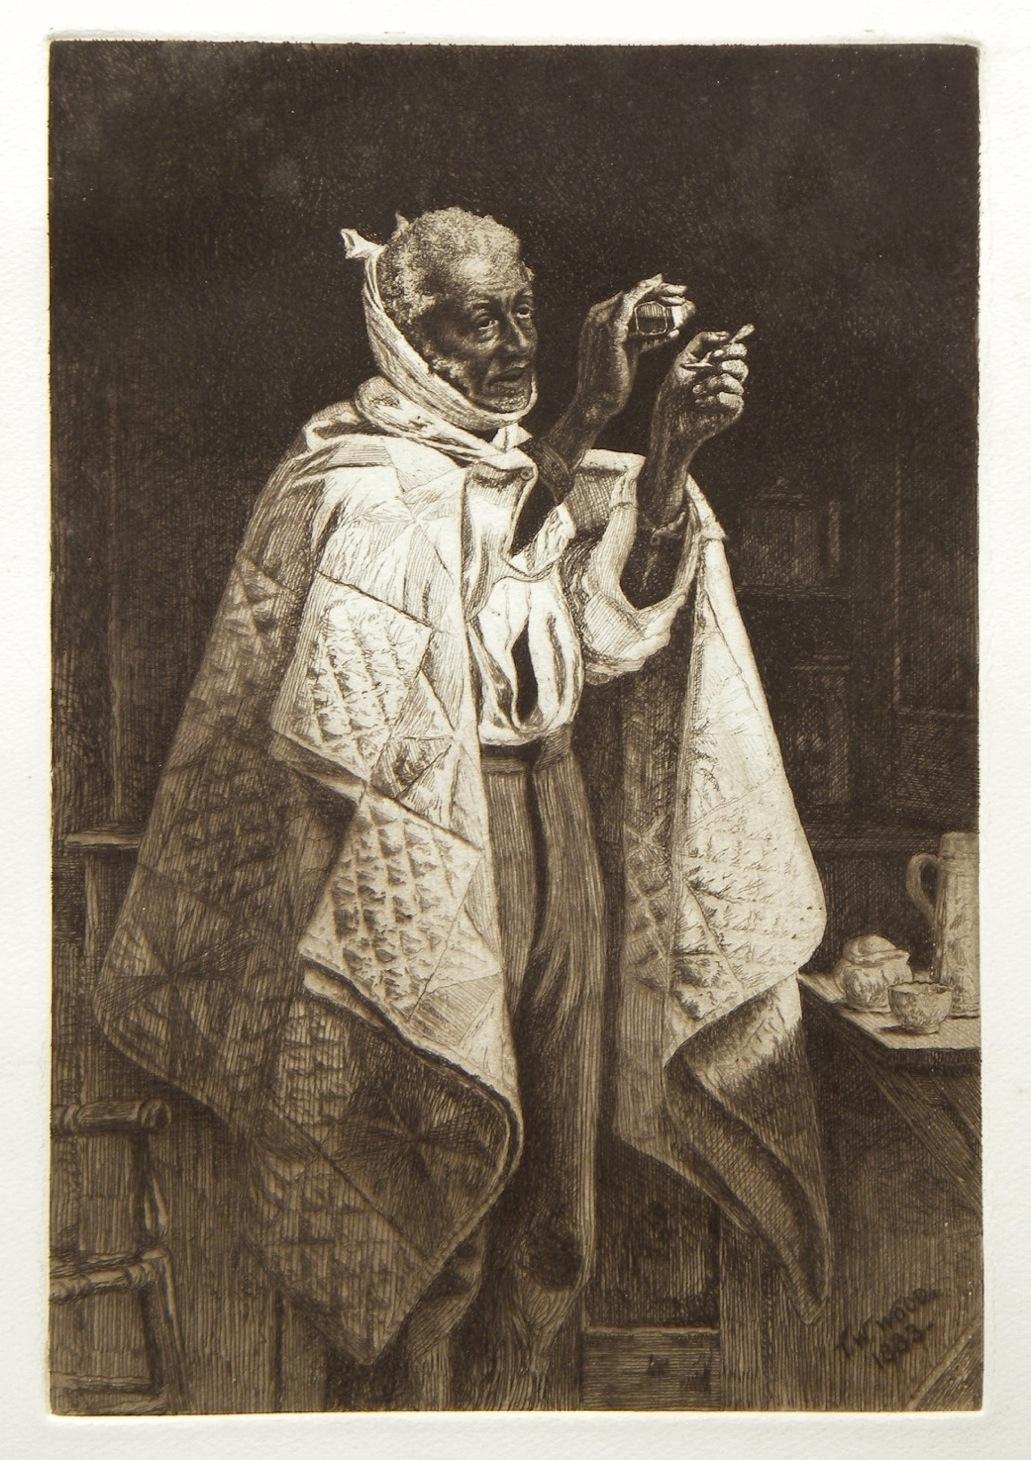 Thomas Waterman Wood Portrait Print – "Sein eigener Arzt" Original-Radierung